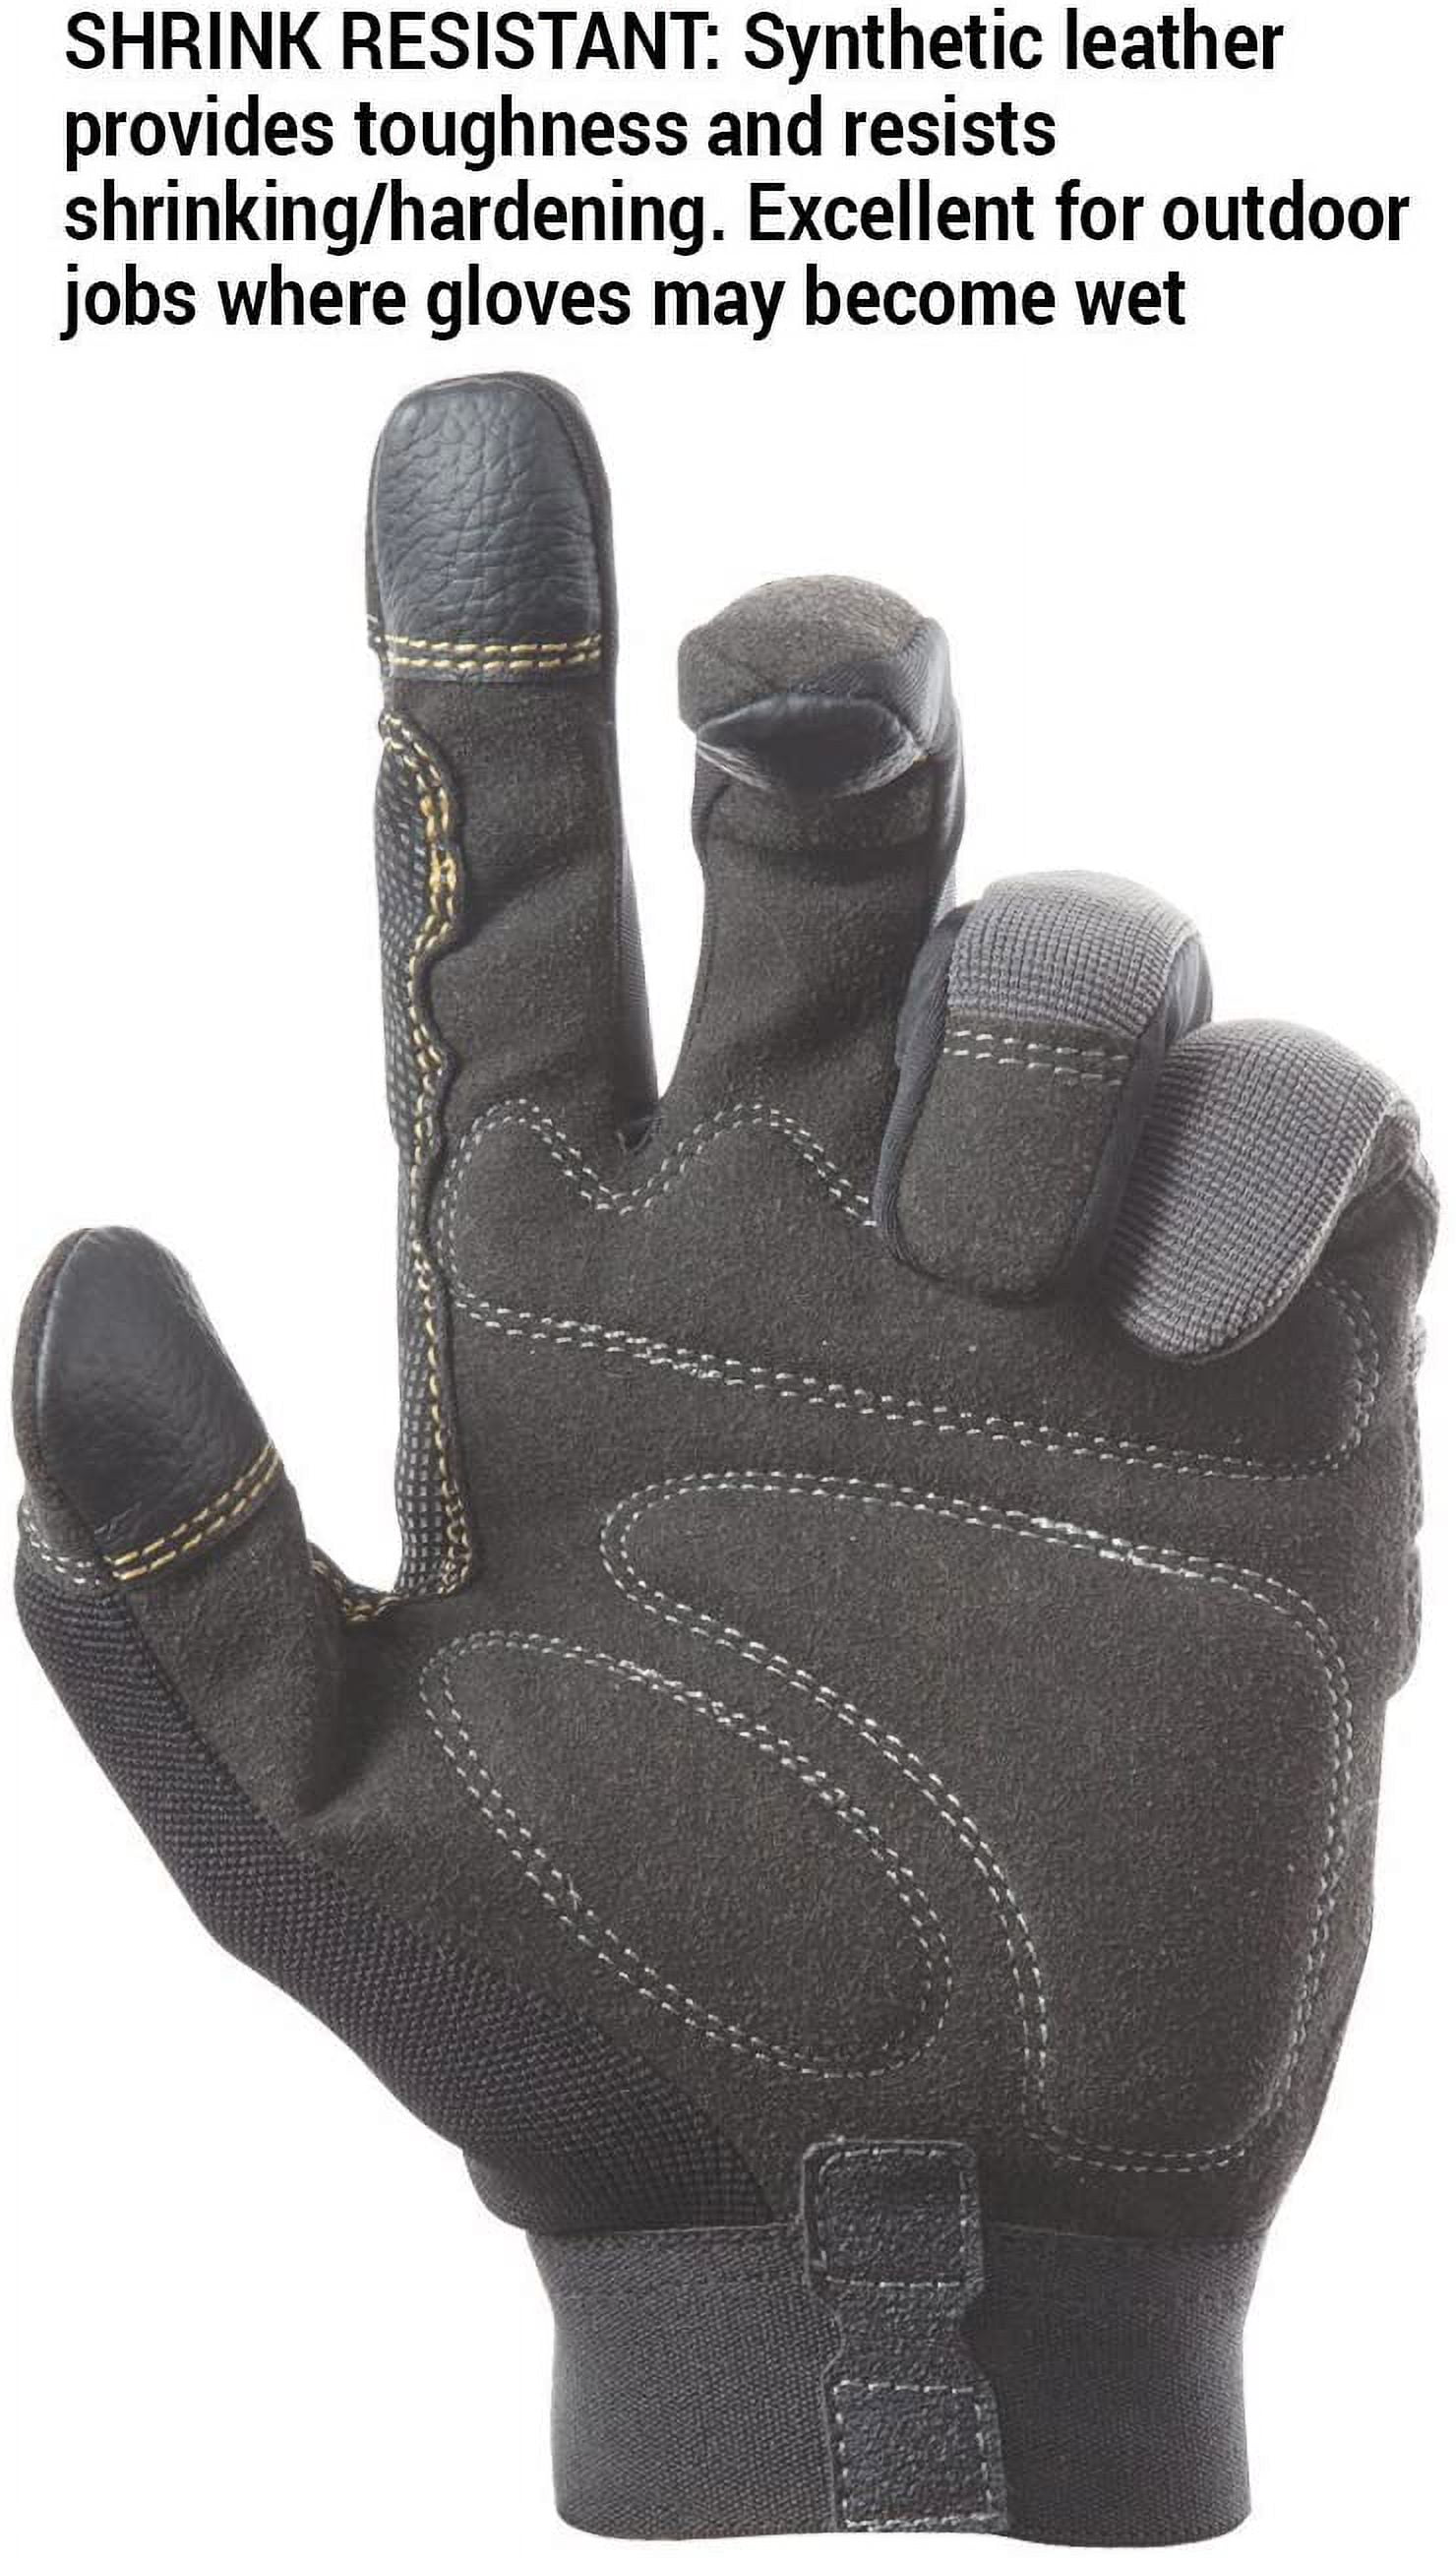 Flex-Grip Work Gloves, Large - 124L